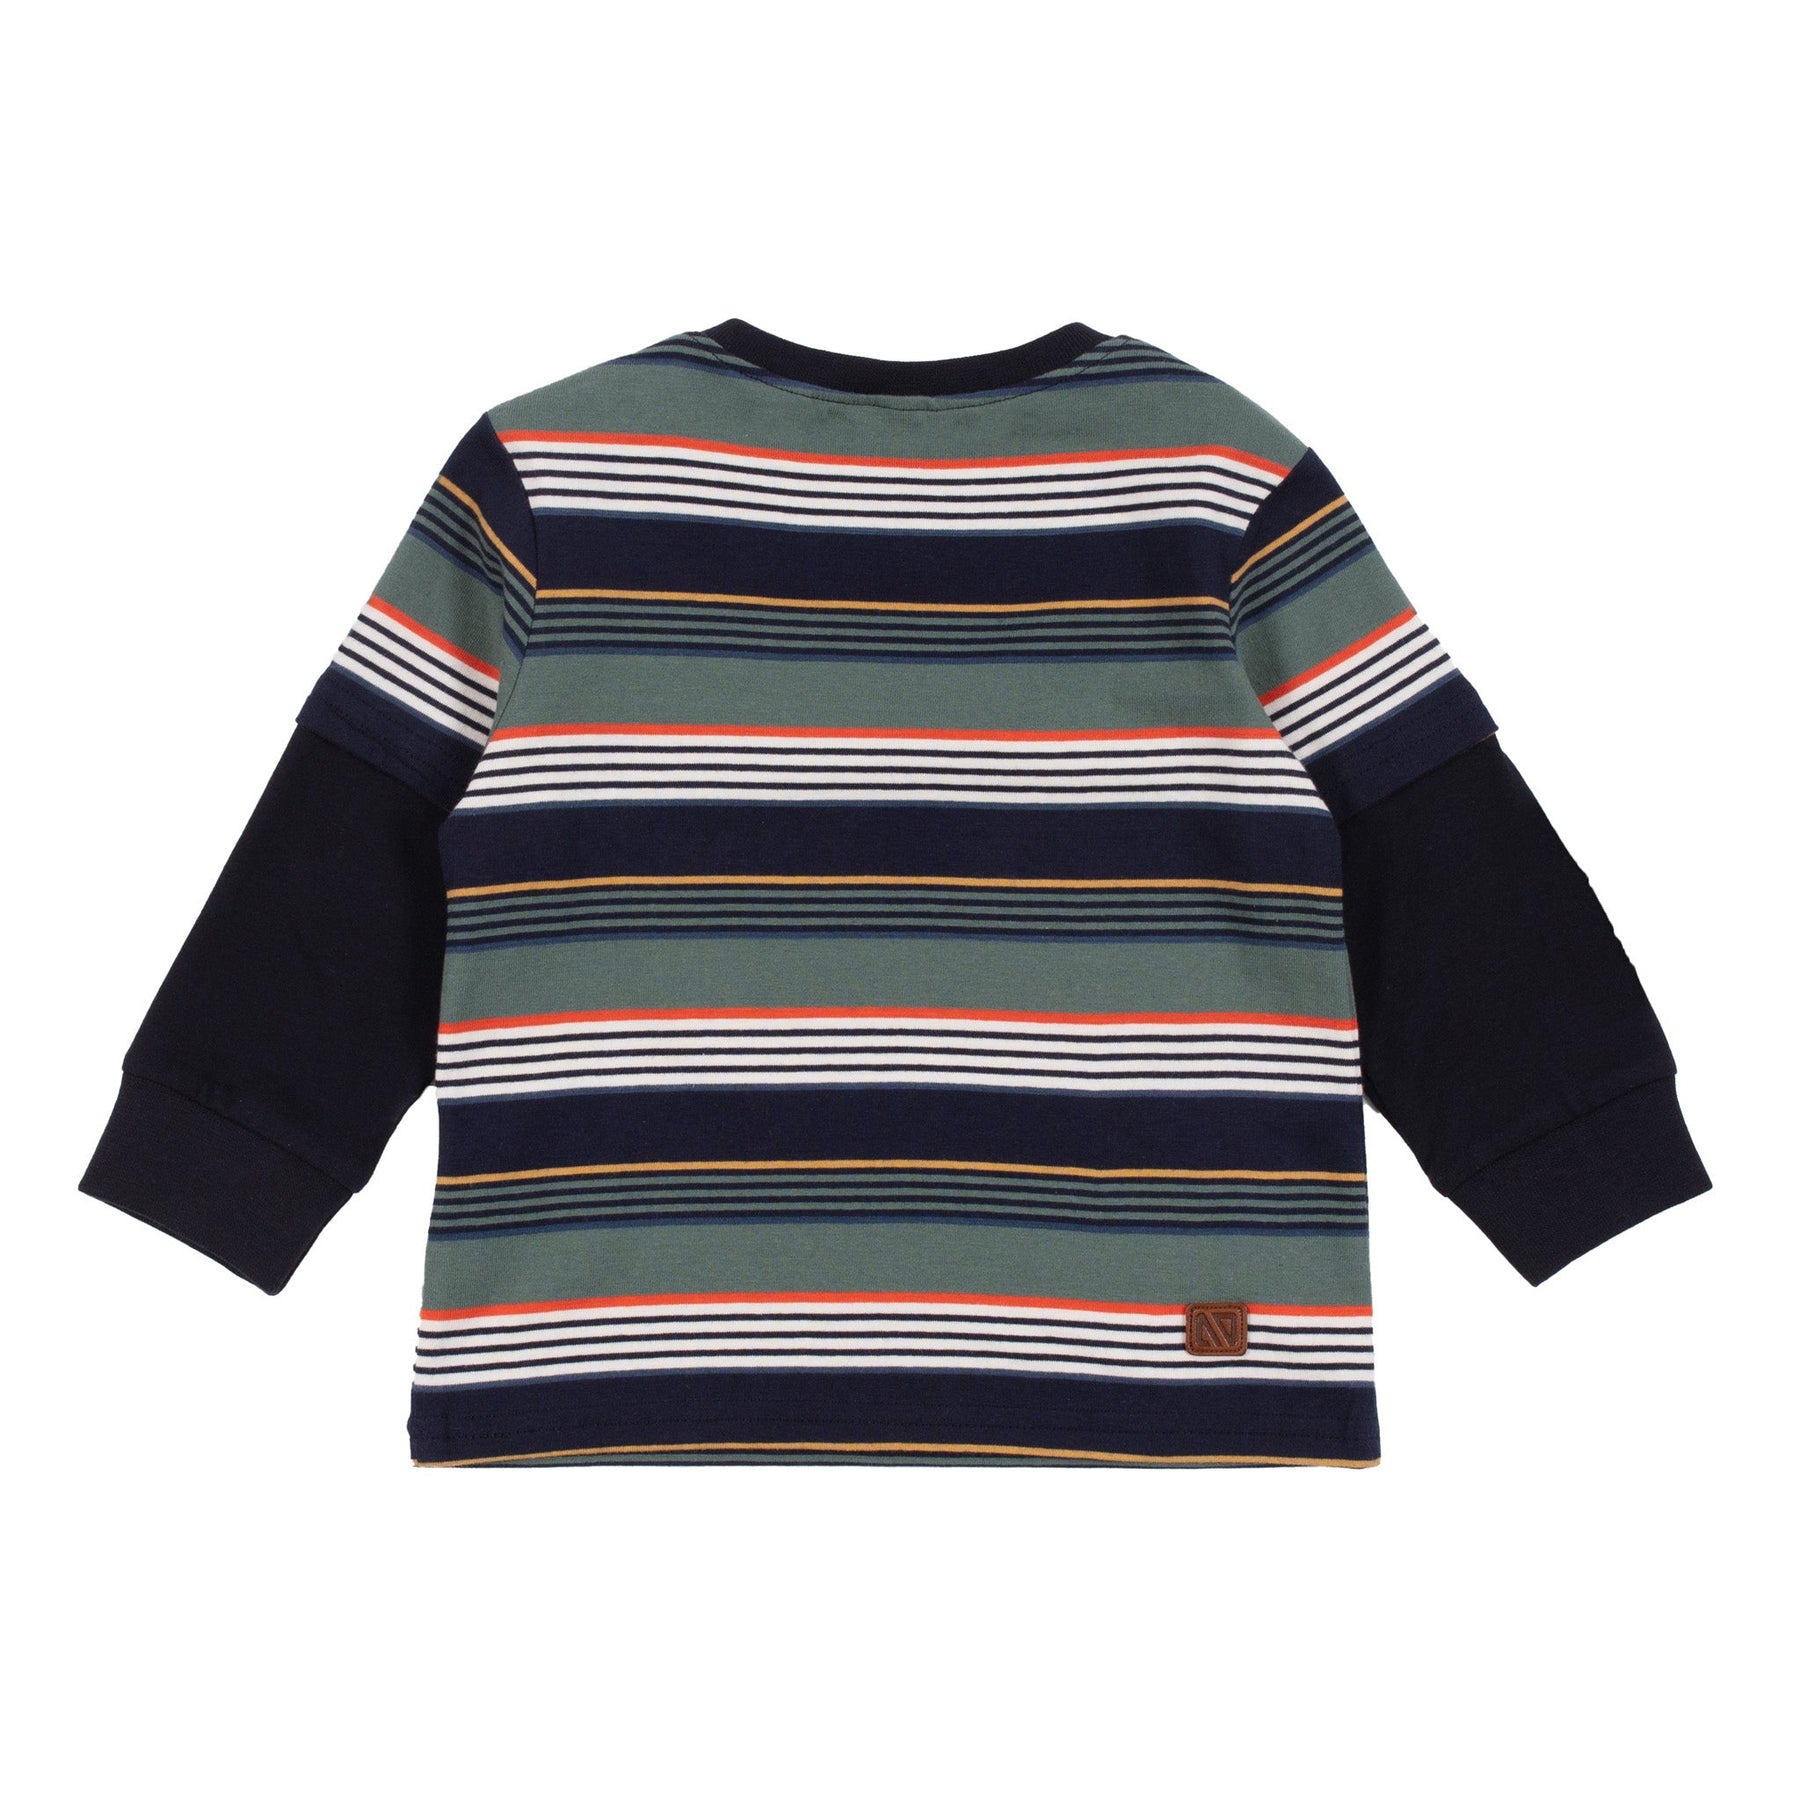 Chandail pour bébé garçon par Nanö | F2257-09 Vert | Boutique Flos, vêtements mode pour bébés et enfants